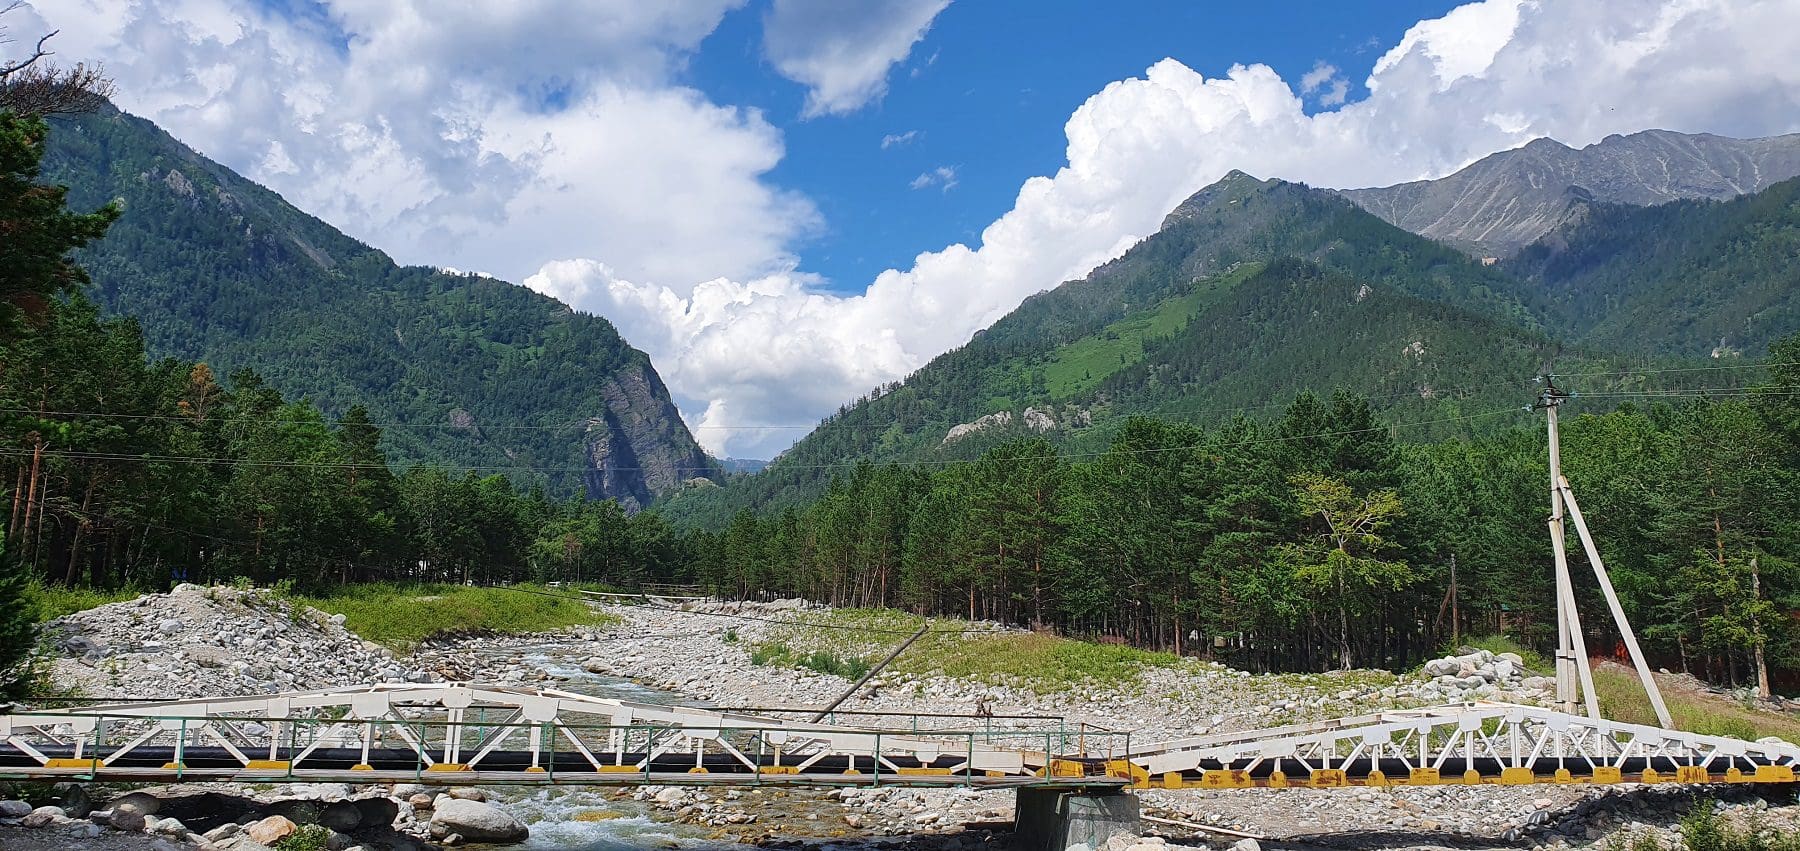 Kyngyrga valley near Arshan Buryatia